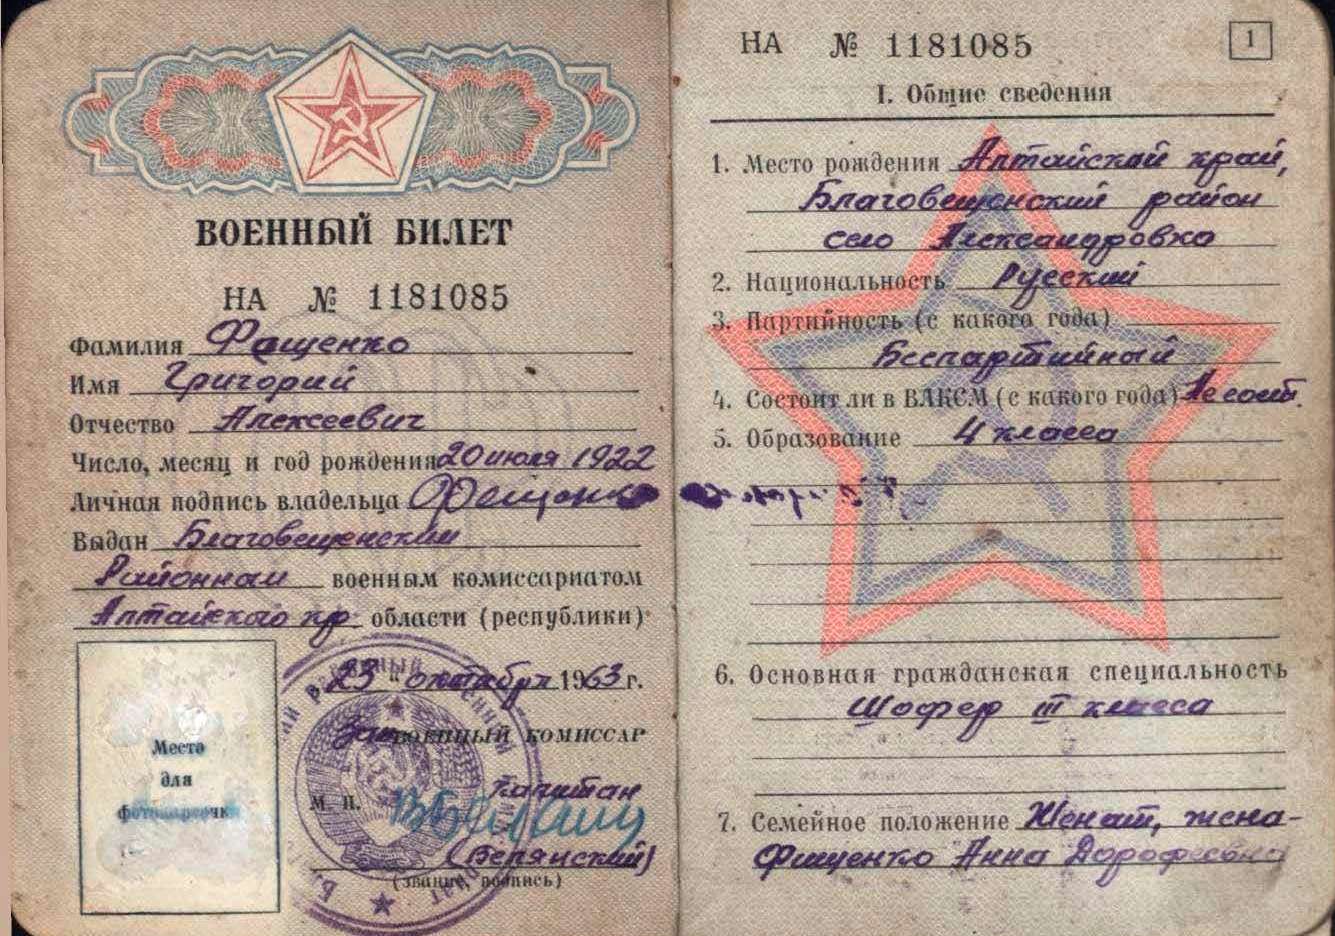 Фещенко. Военный билет.jpg